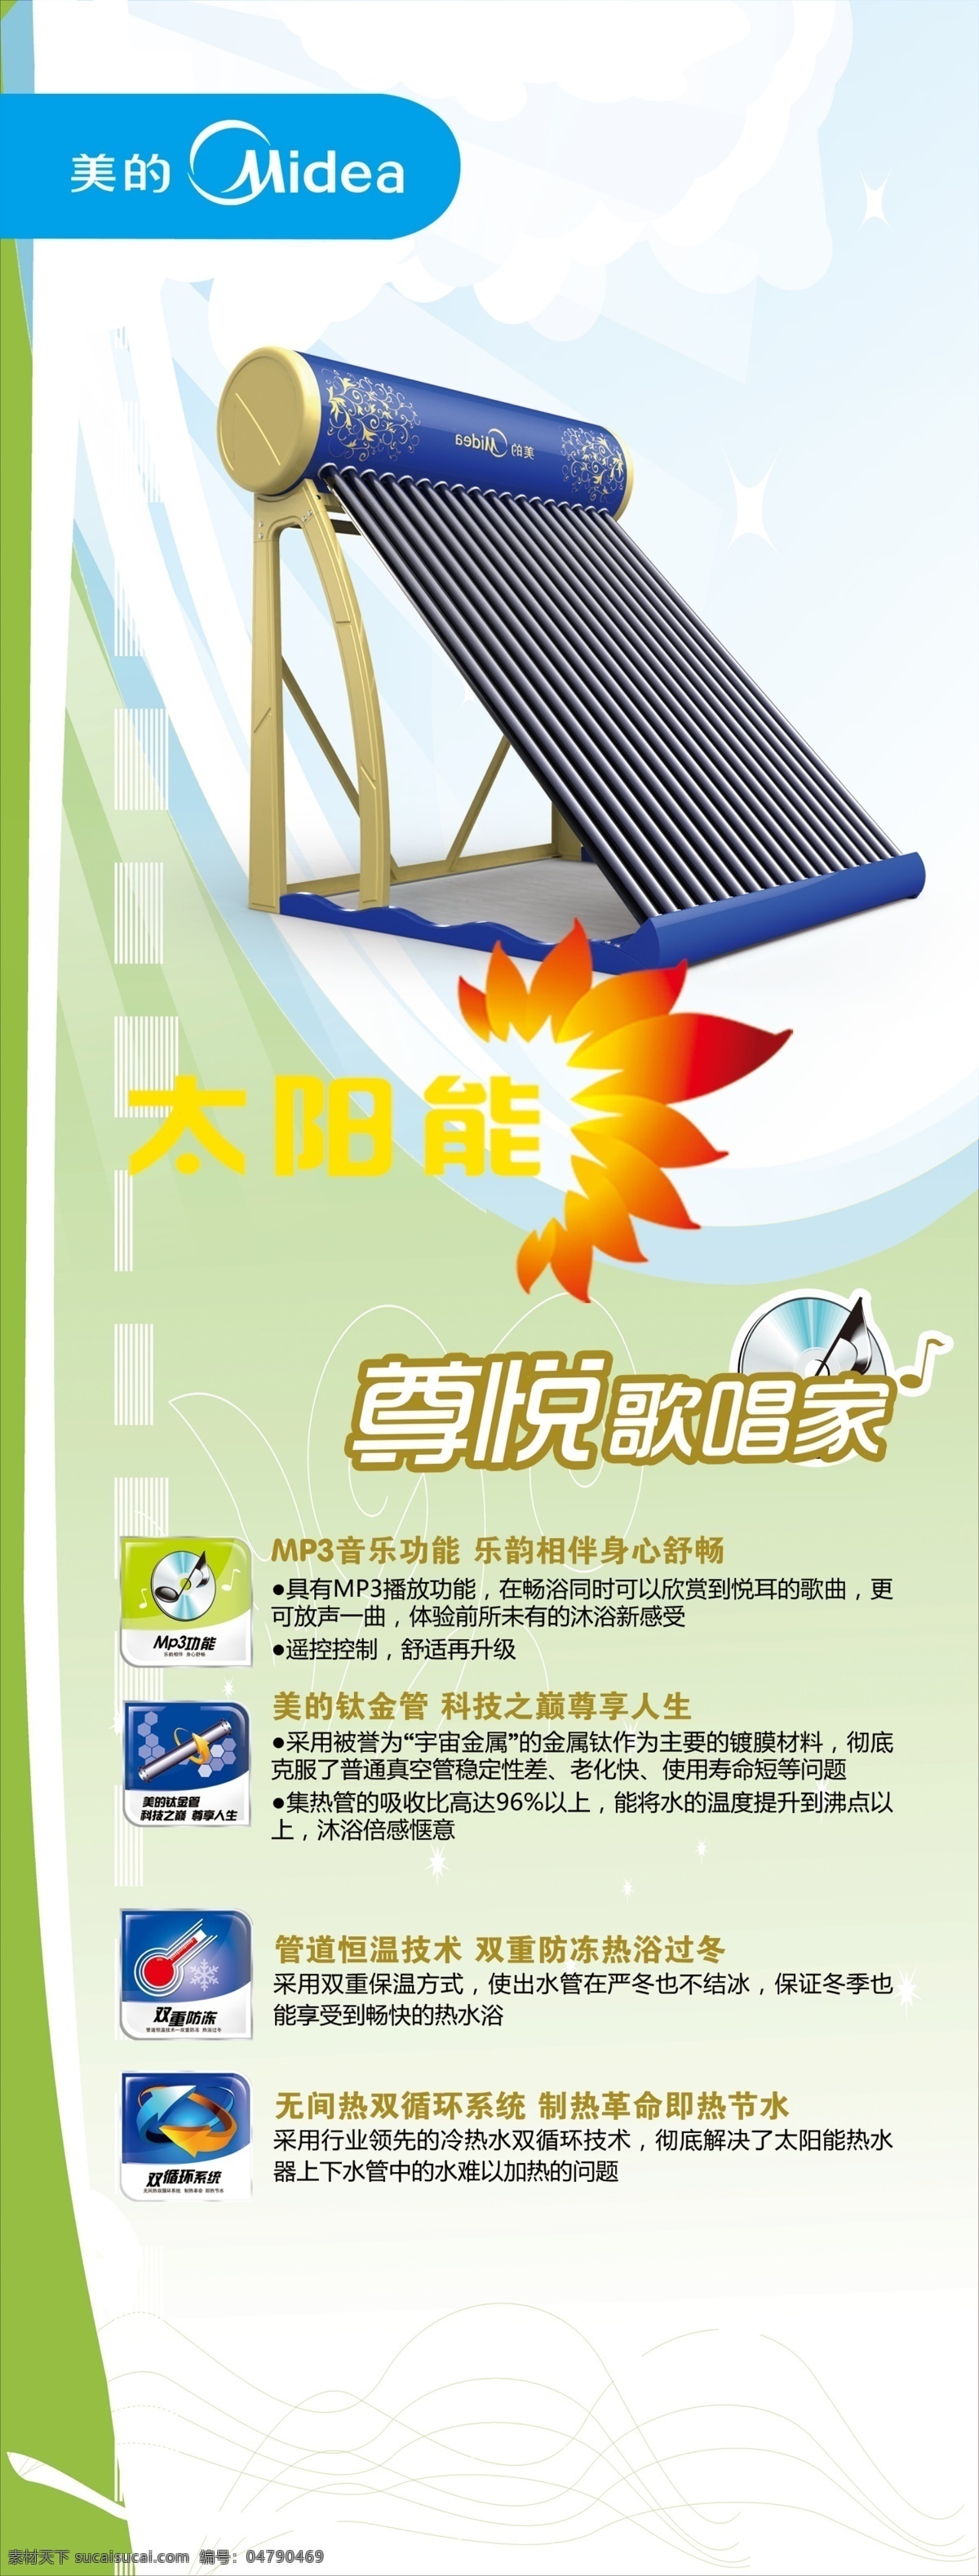 白云 广告设计模板 蓝天 美的标志 美的热水器 太阳能标志 太阳能热水器 美的空调3 mp3功能 美的钛金管 双重防冻 双循环系统 音频 源文件 psd源文件